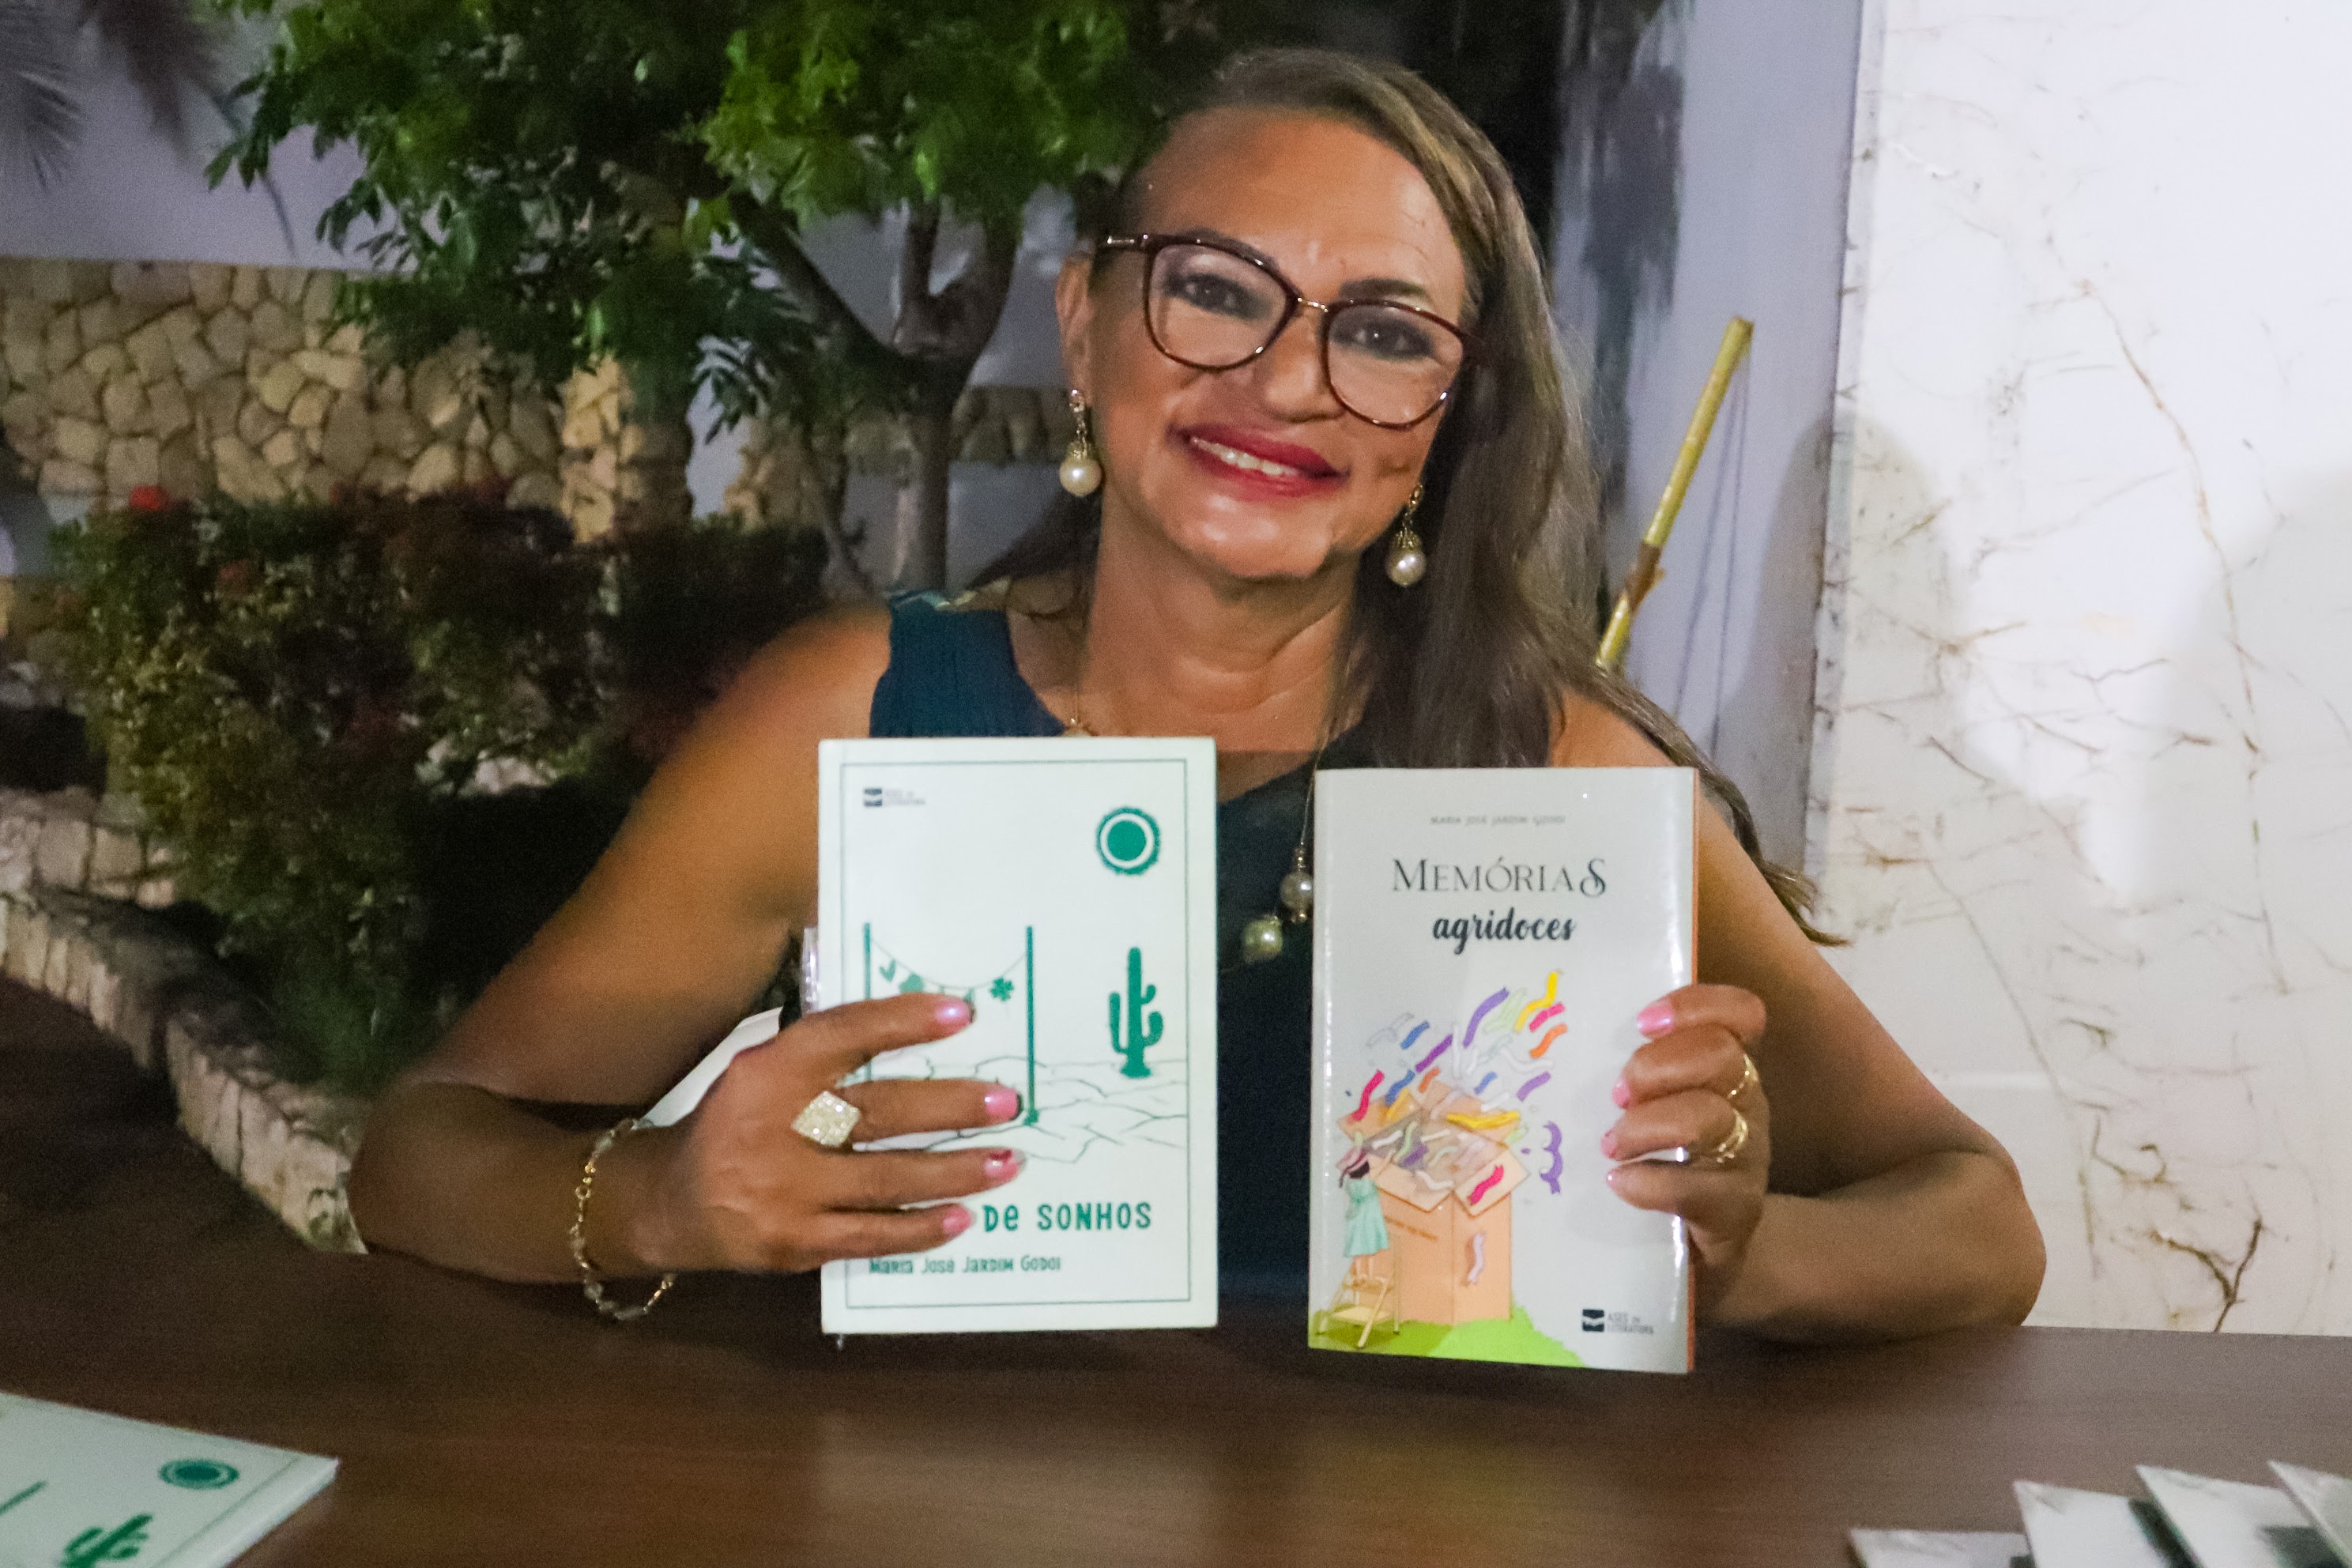 Talentos de Rio Verde: Maria José Jardim Godoi, a Poesia que Toca o Coração do Brasil